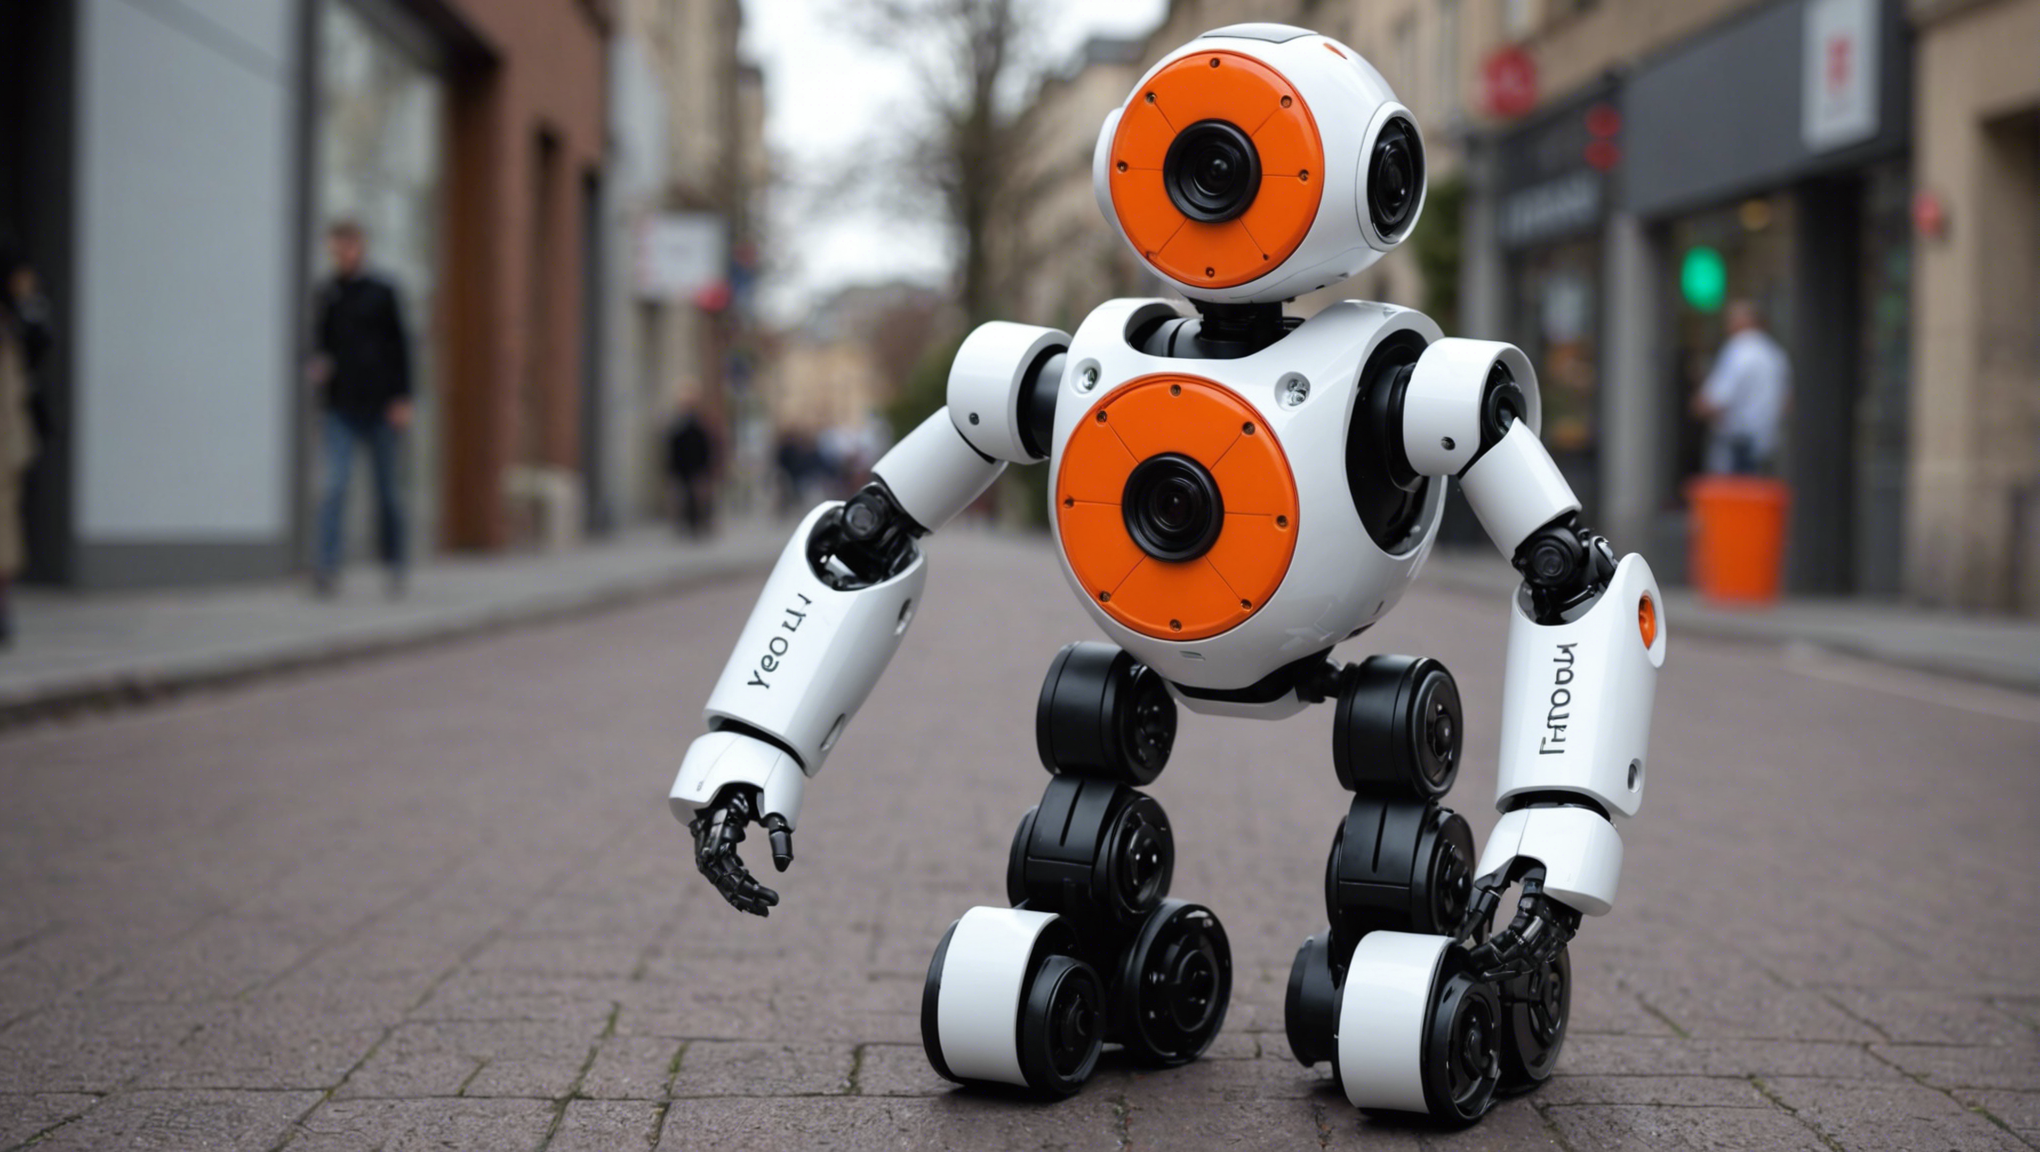 découvrez poppy, le robot humanoïde imprimé en 3d pour s'amuser en robotique ! profitez d'une expérience ludique et éducative avec ce compagnon robotique unique.